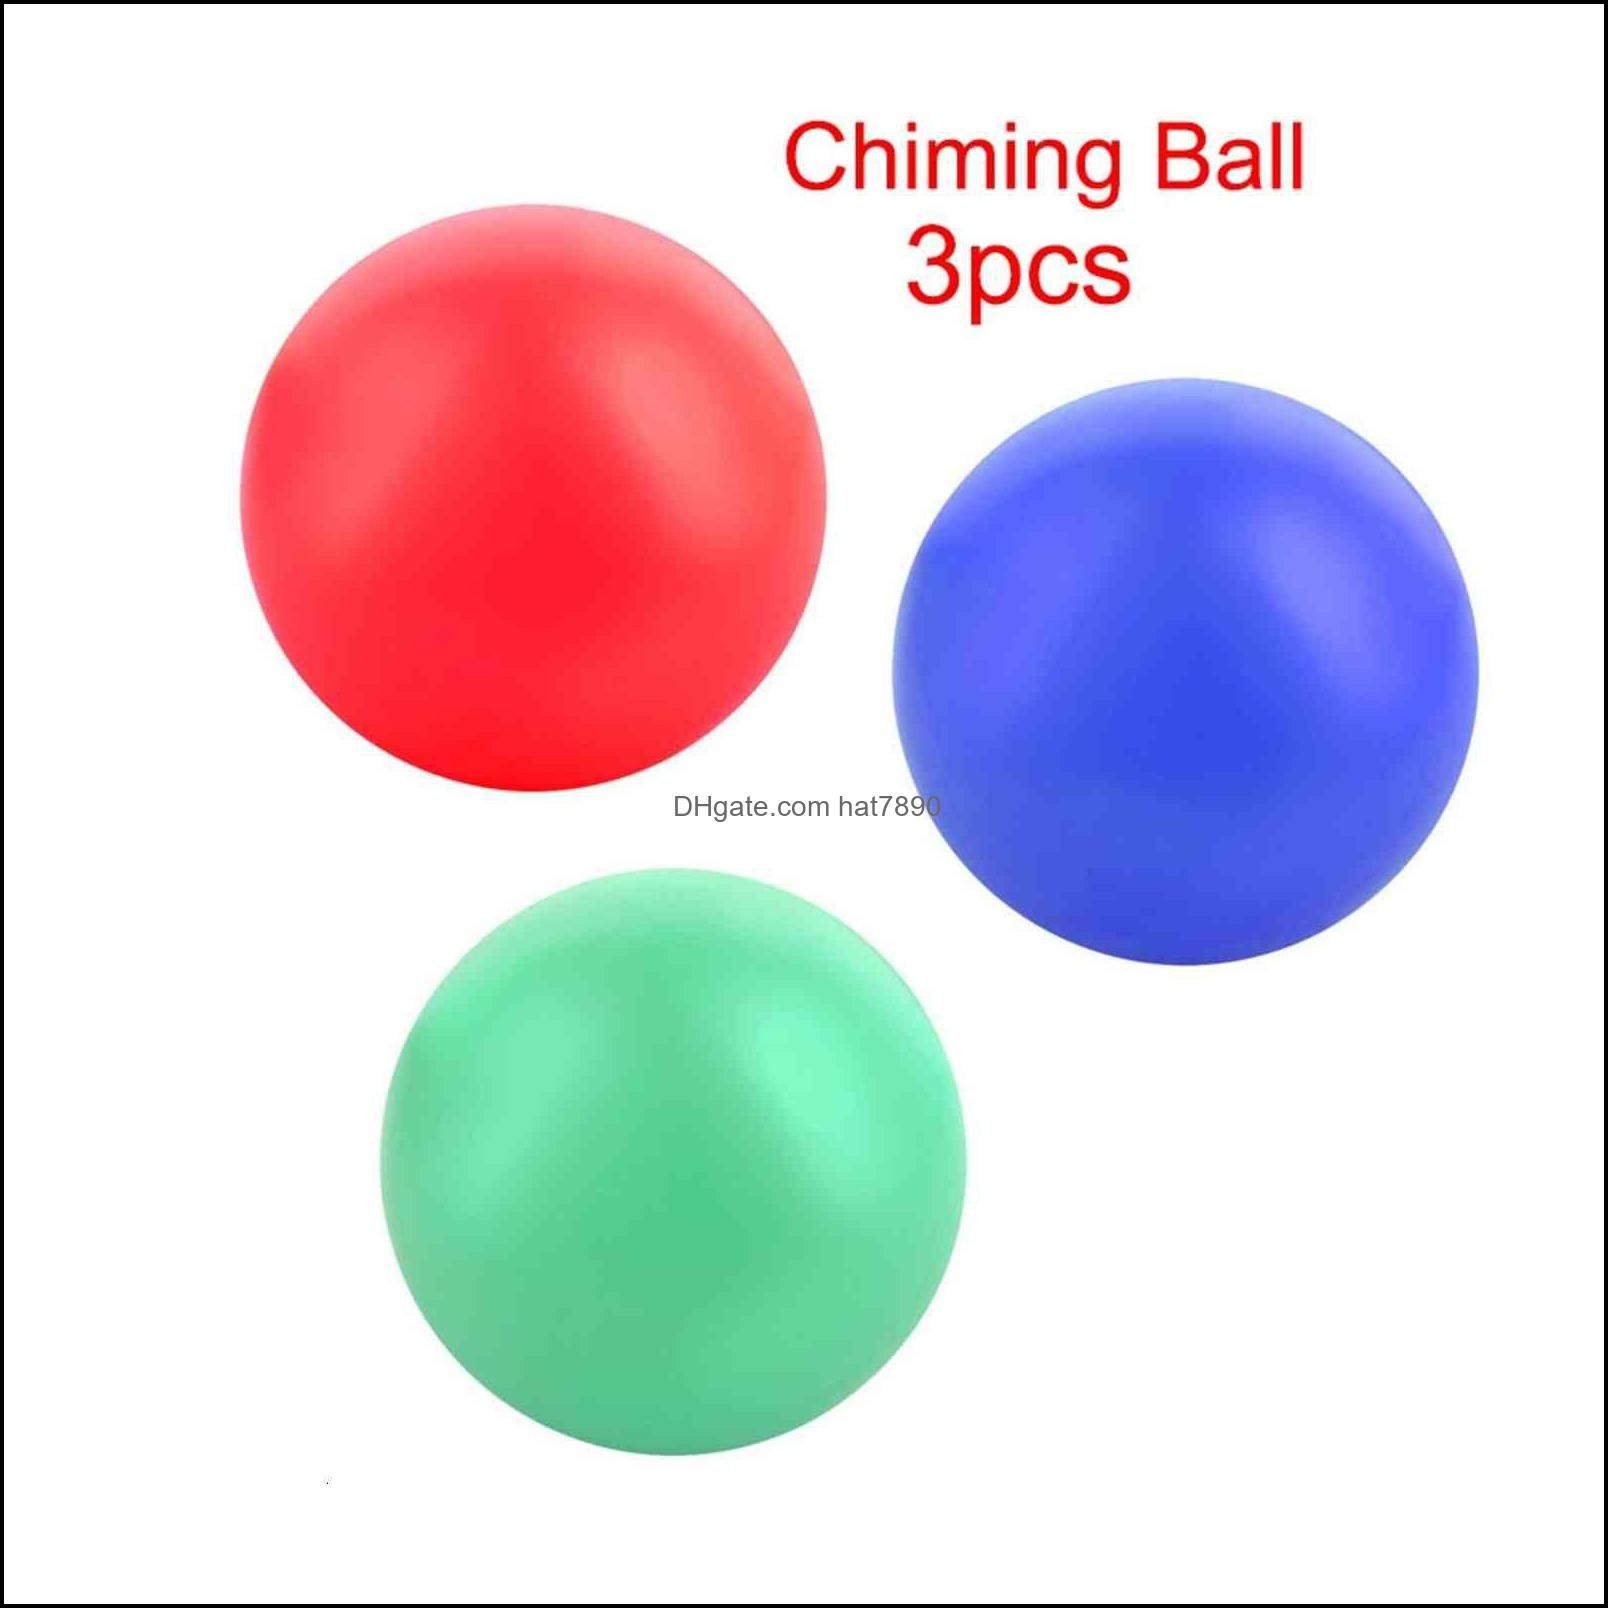 chiming ball 3pcs.